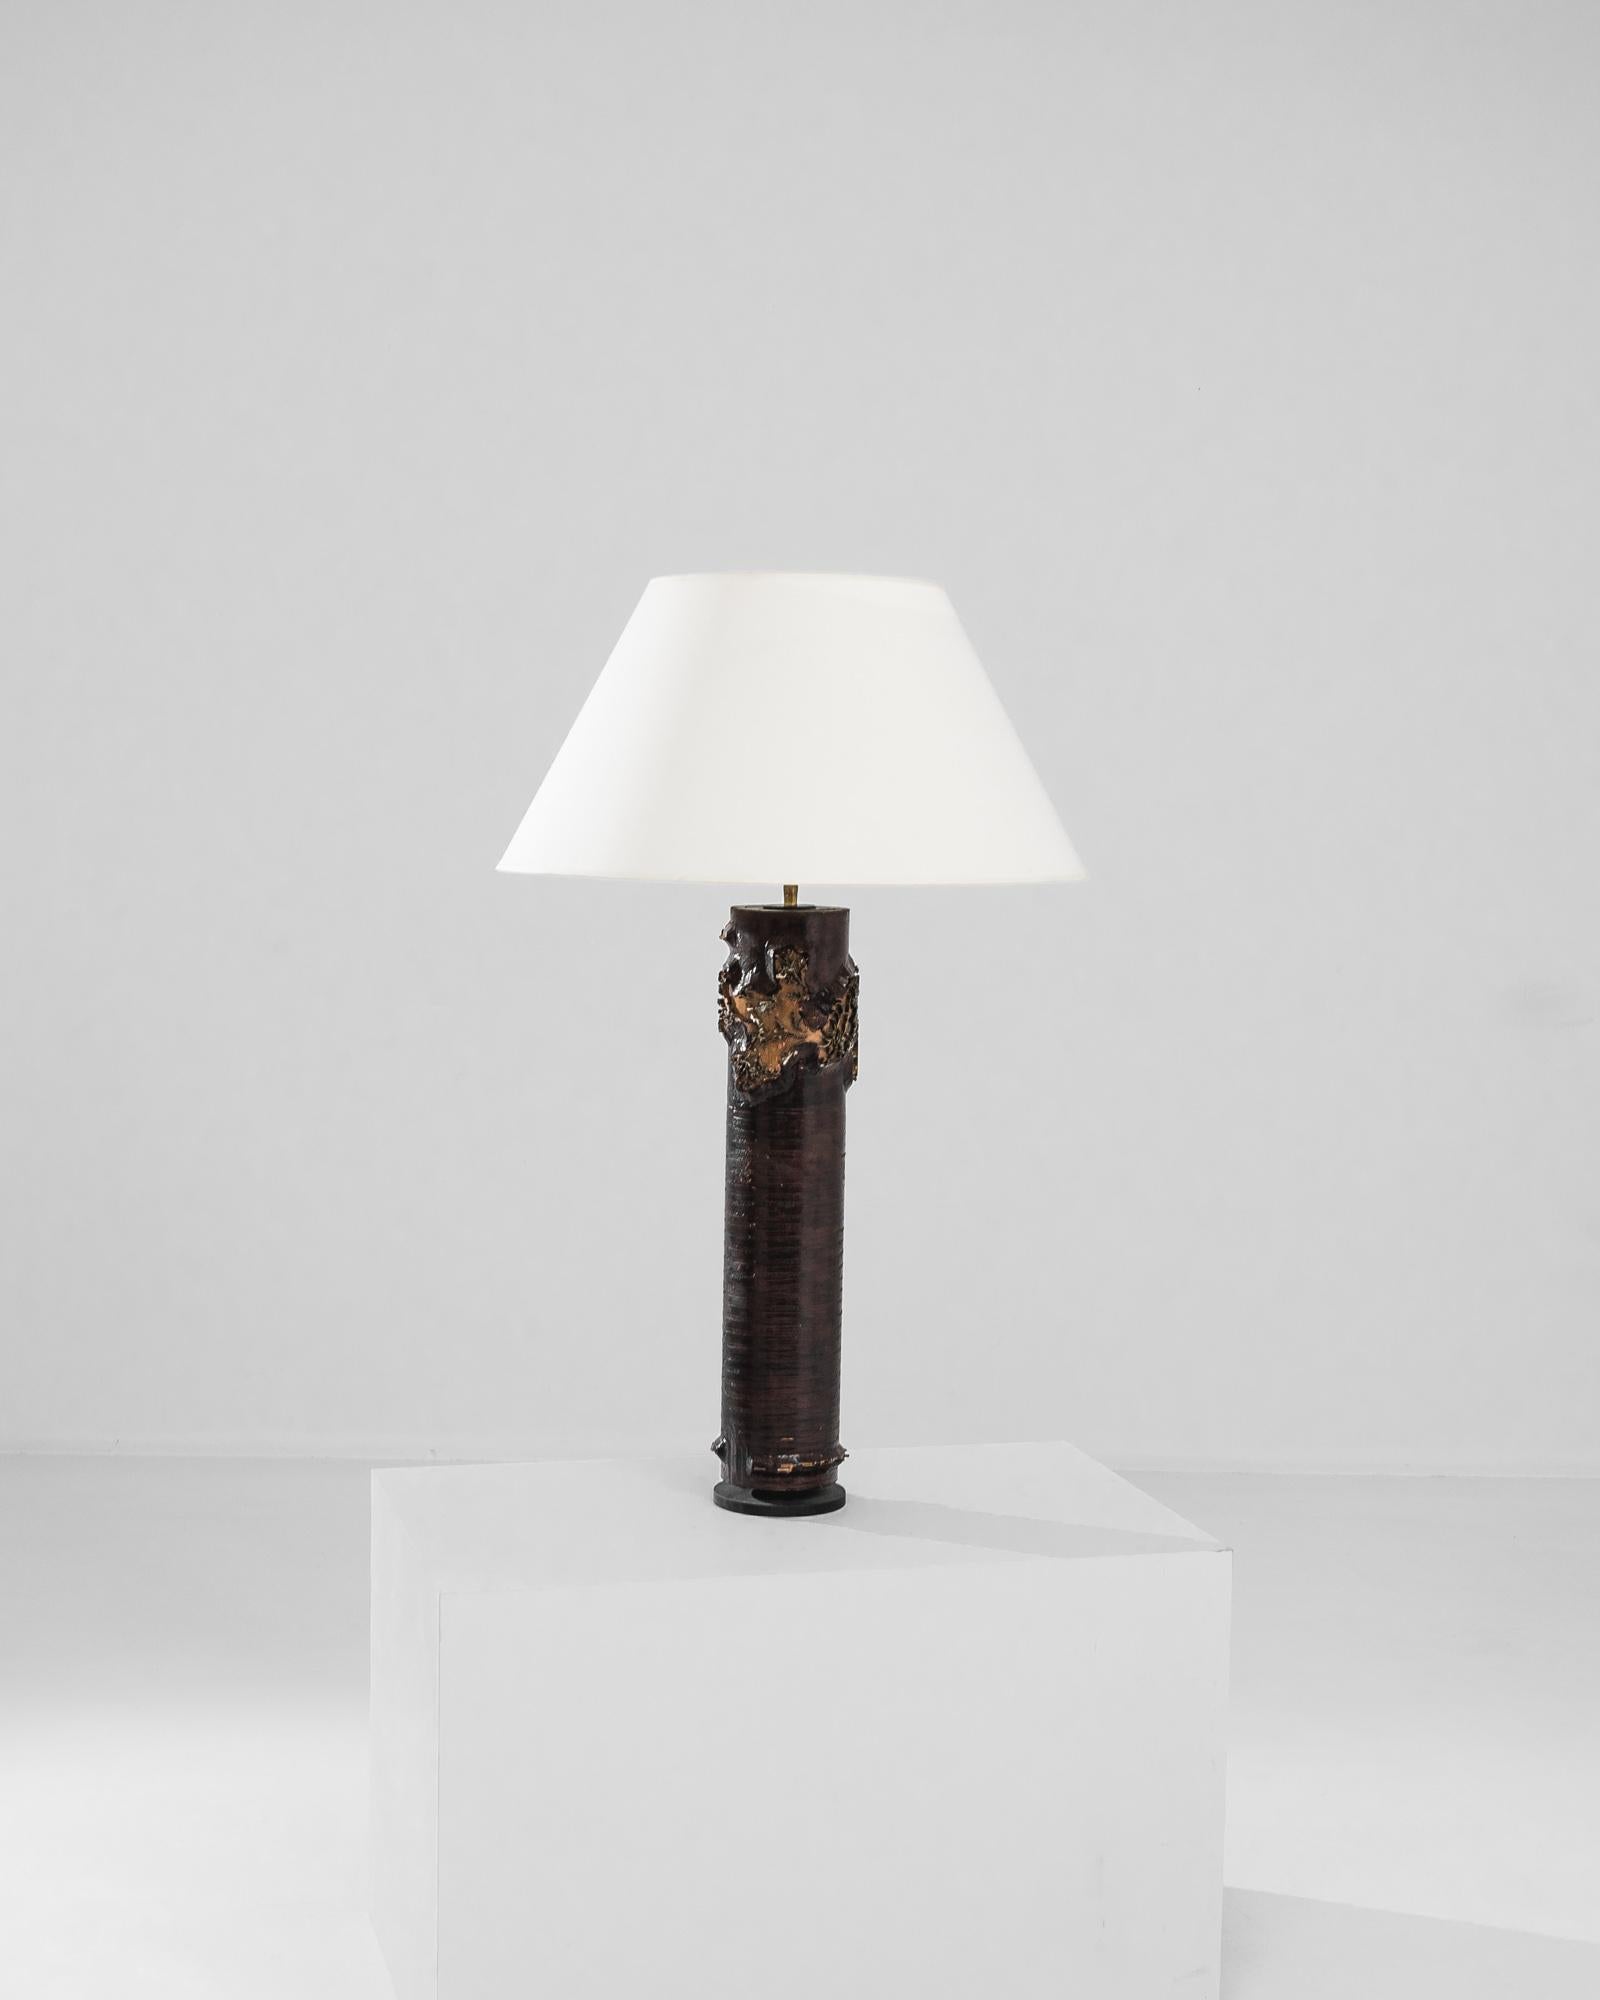 Une lampe de table en bois de France, produite vers 1970. Une colonne sculptée, un cylindre gravé : un ancien rouleau d'impression de papier peint en héliogravure devient une charmante lampe de table vintage, s'élevant à plus d'un mètre. Recouverte